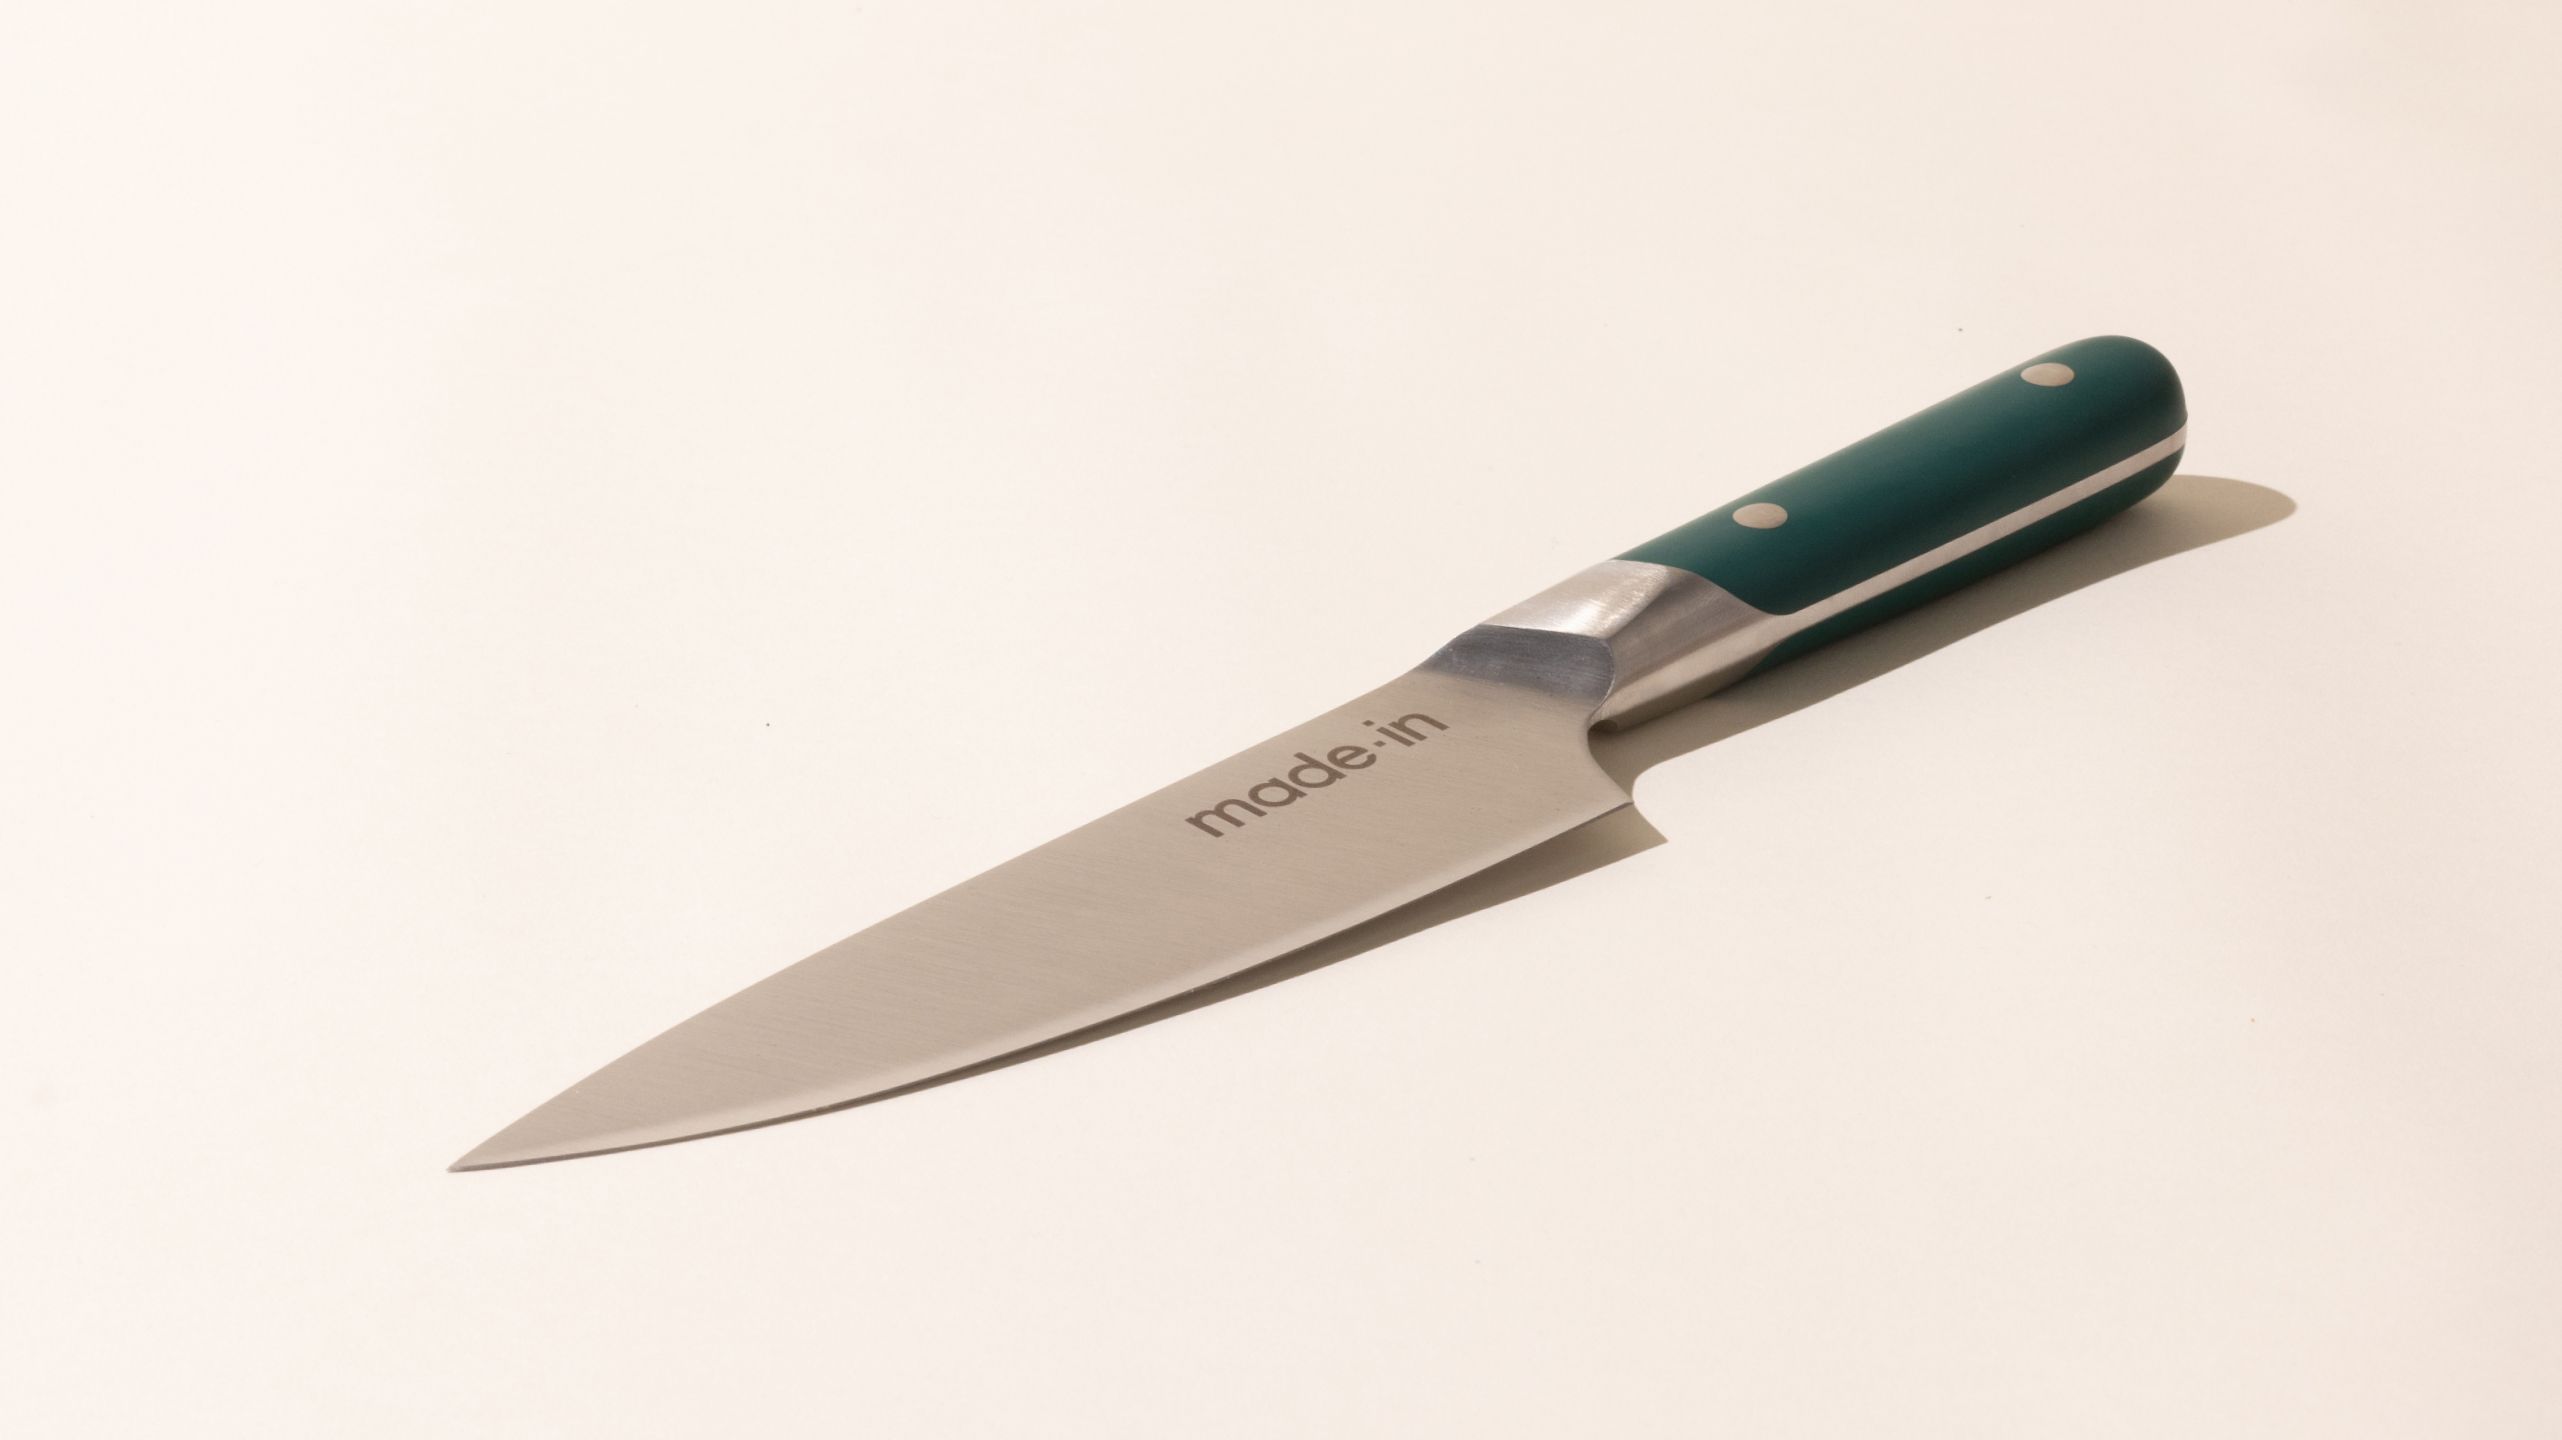 Mac Paring Knife 5 inch, Cutlery